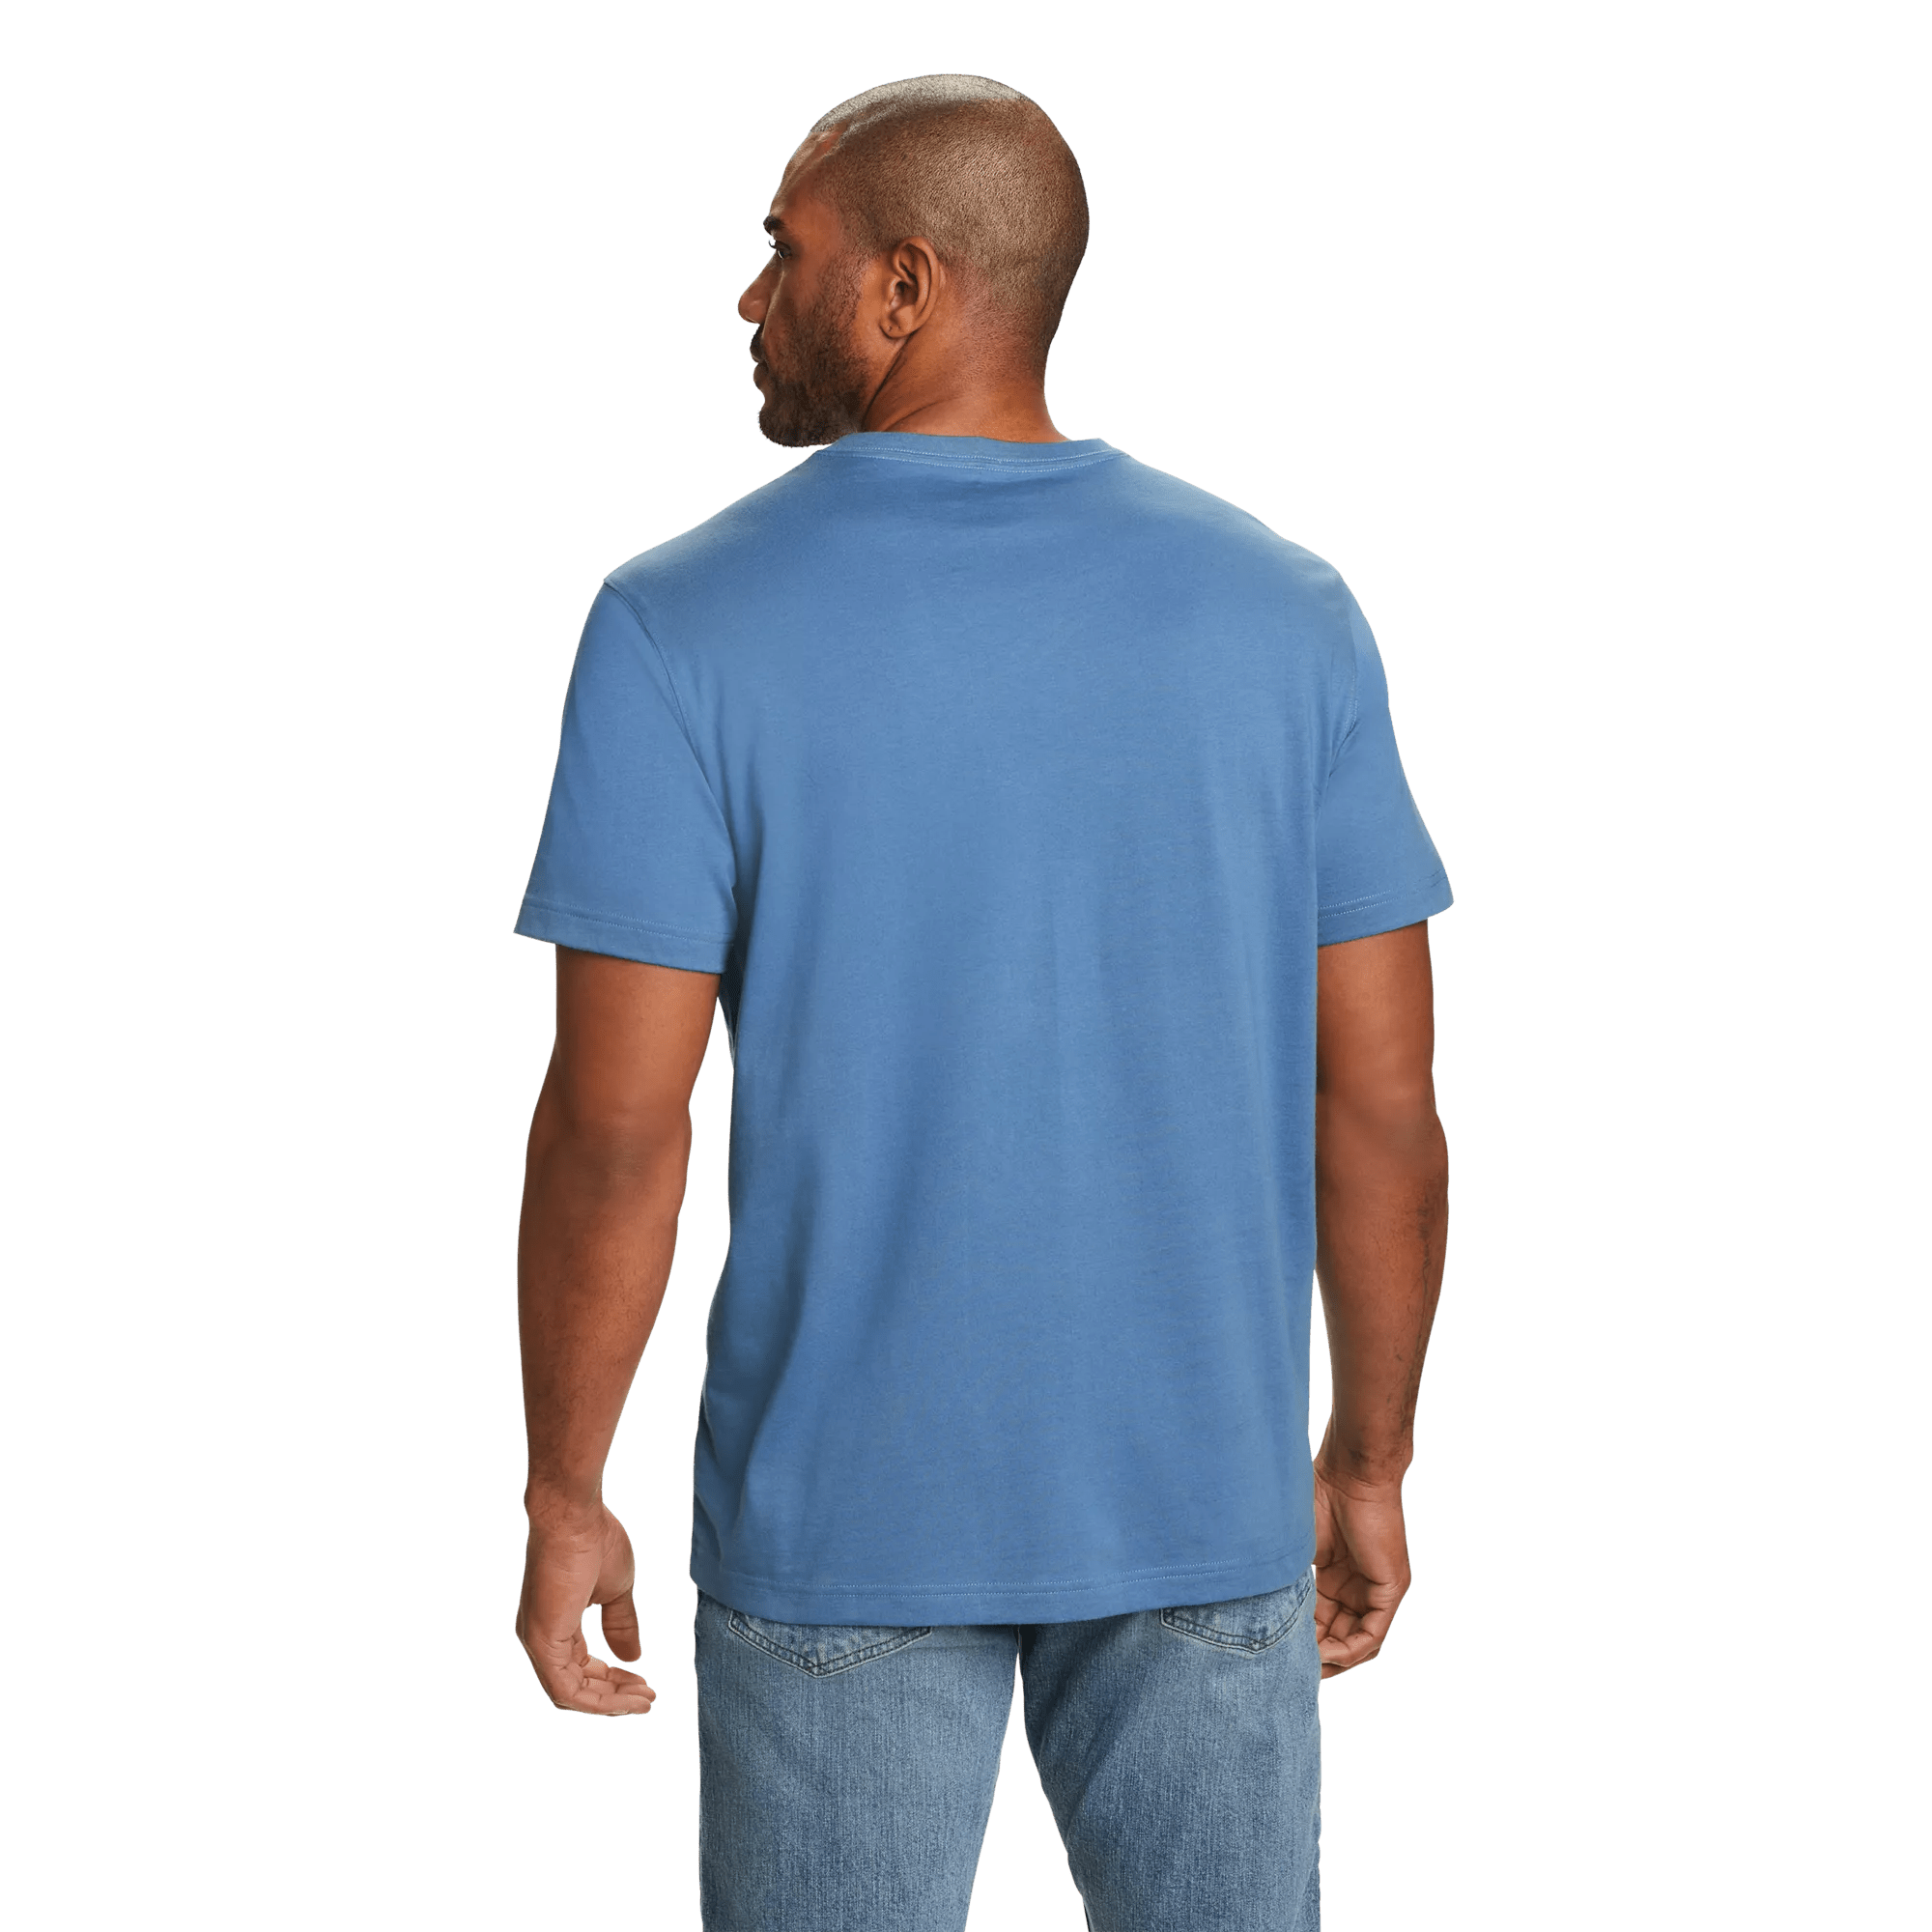 Legend Wash 100% Cotton Short-Sleeve V-Neck T-Shirt